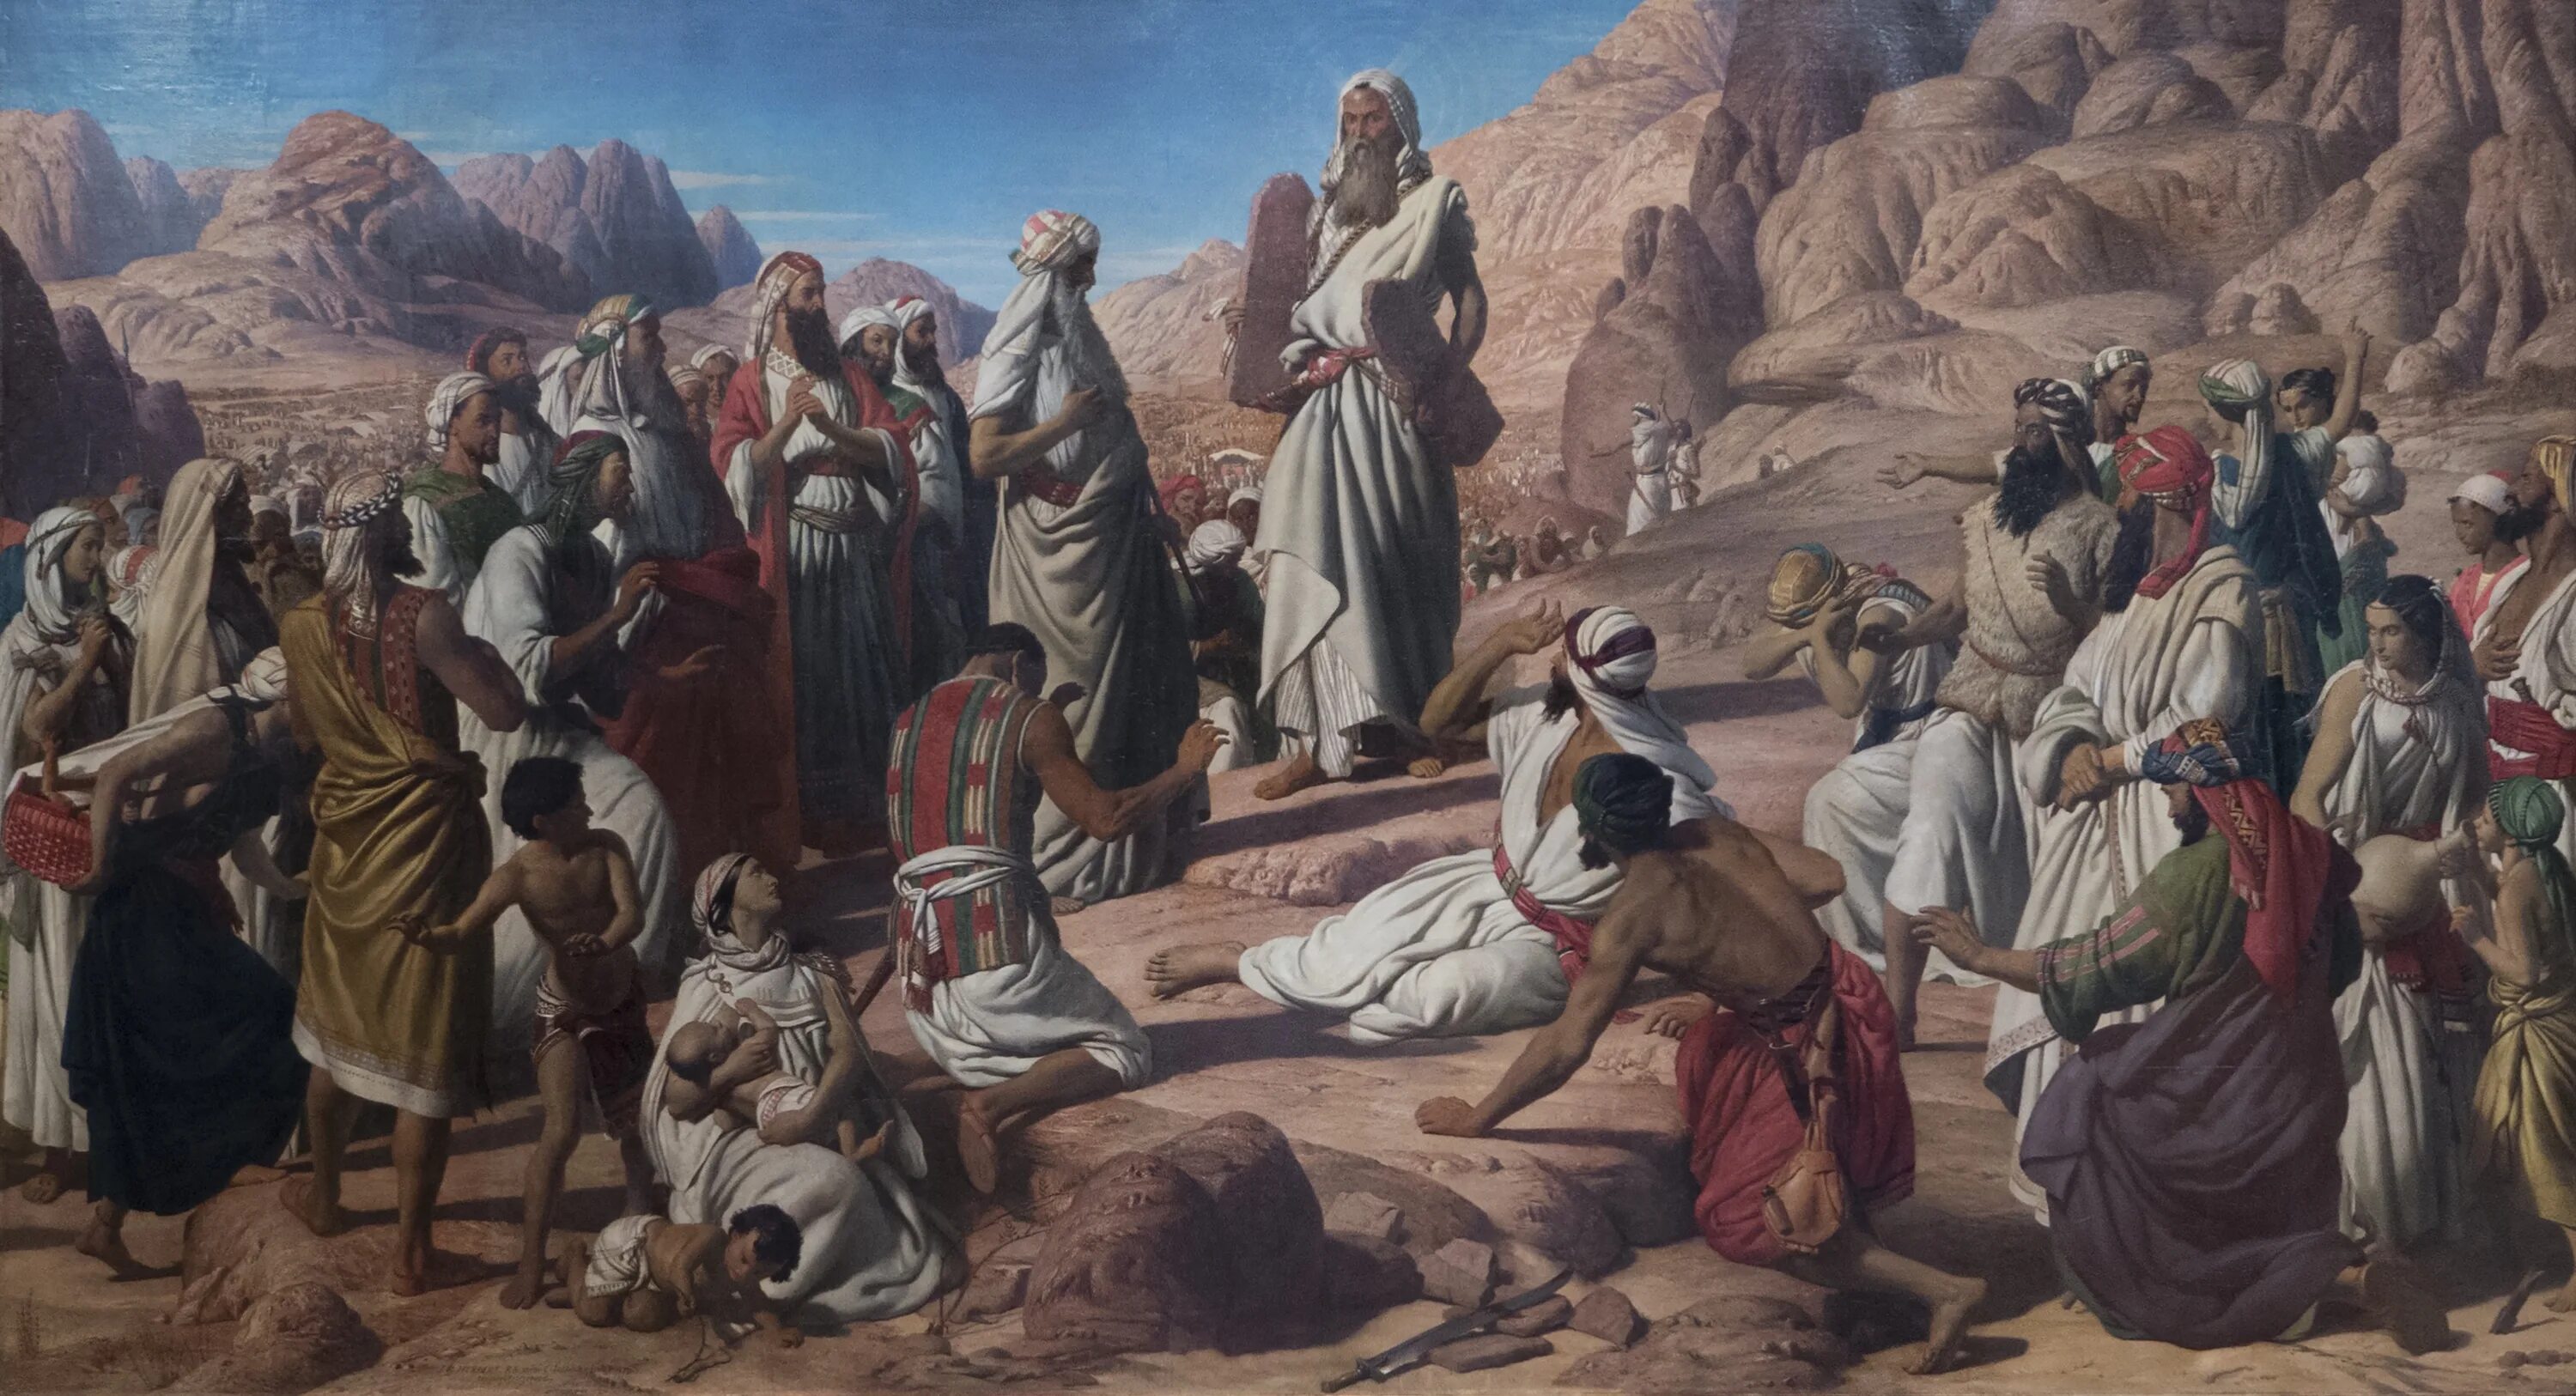 Книга торы о скитаниях евреев по пустыне. Картины исход израильтян Египта.